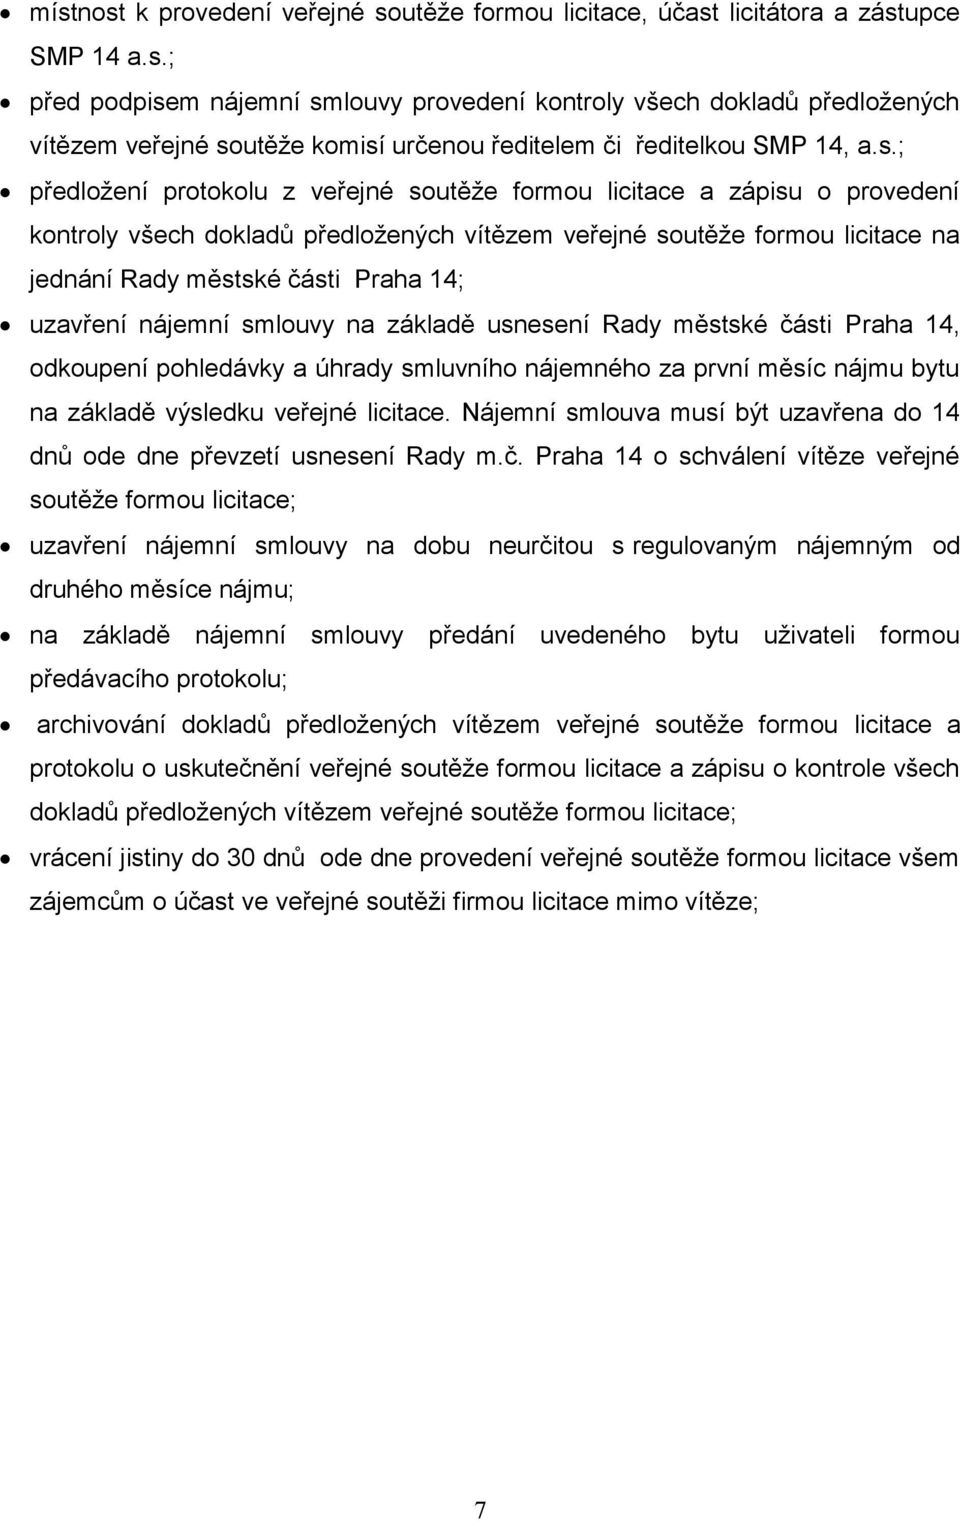 uzavření nájemní smlouvy na základě usnesení Rady městské části Praha 14, odkoupení pohledávky a úhrady smluvního nájemného za první měsíc nájmu bytu na základě výsledku veřejné licitace.